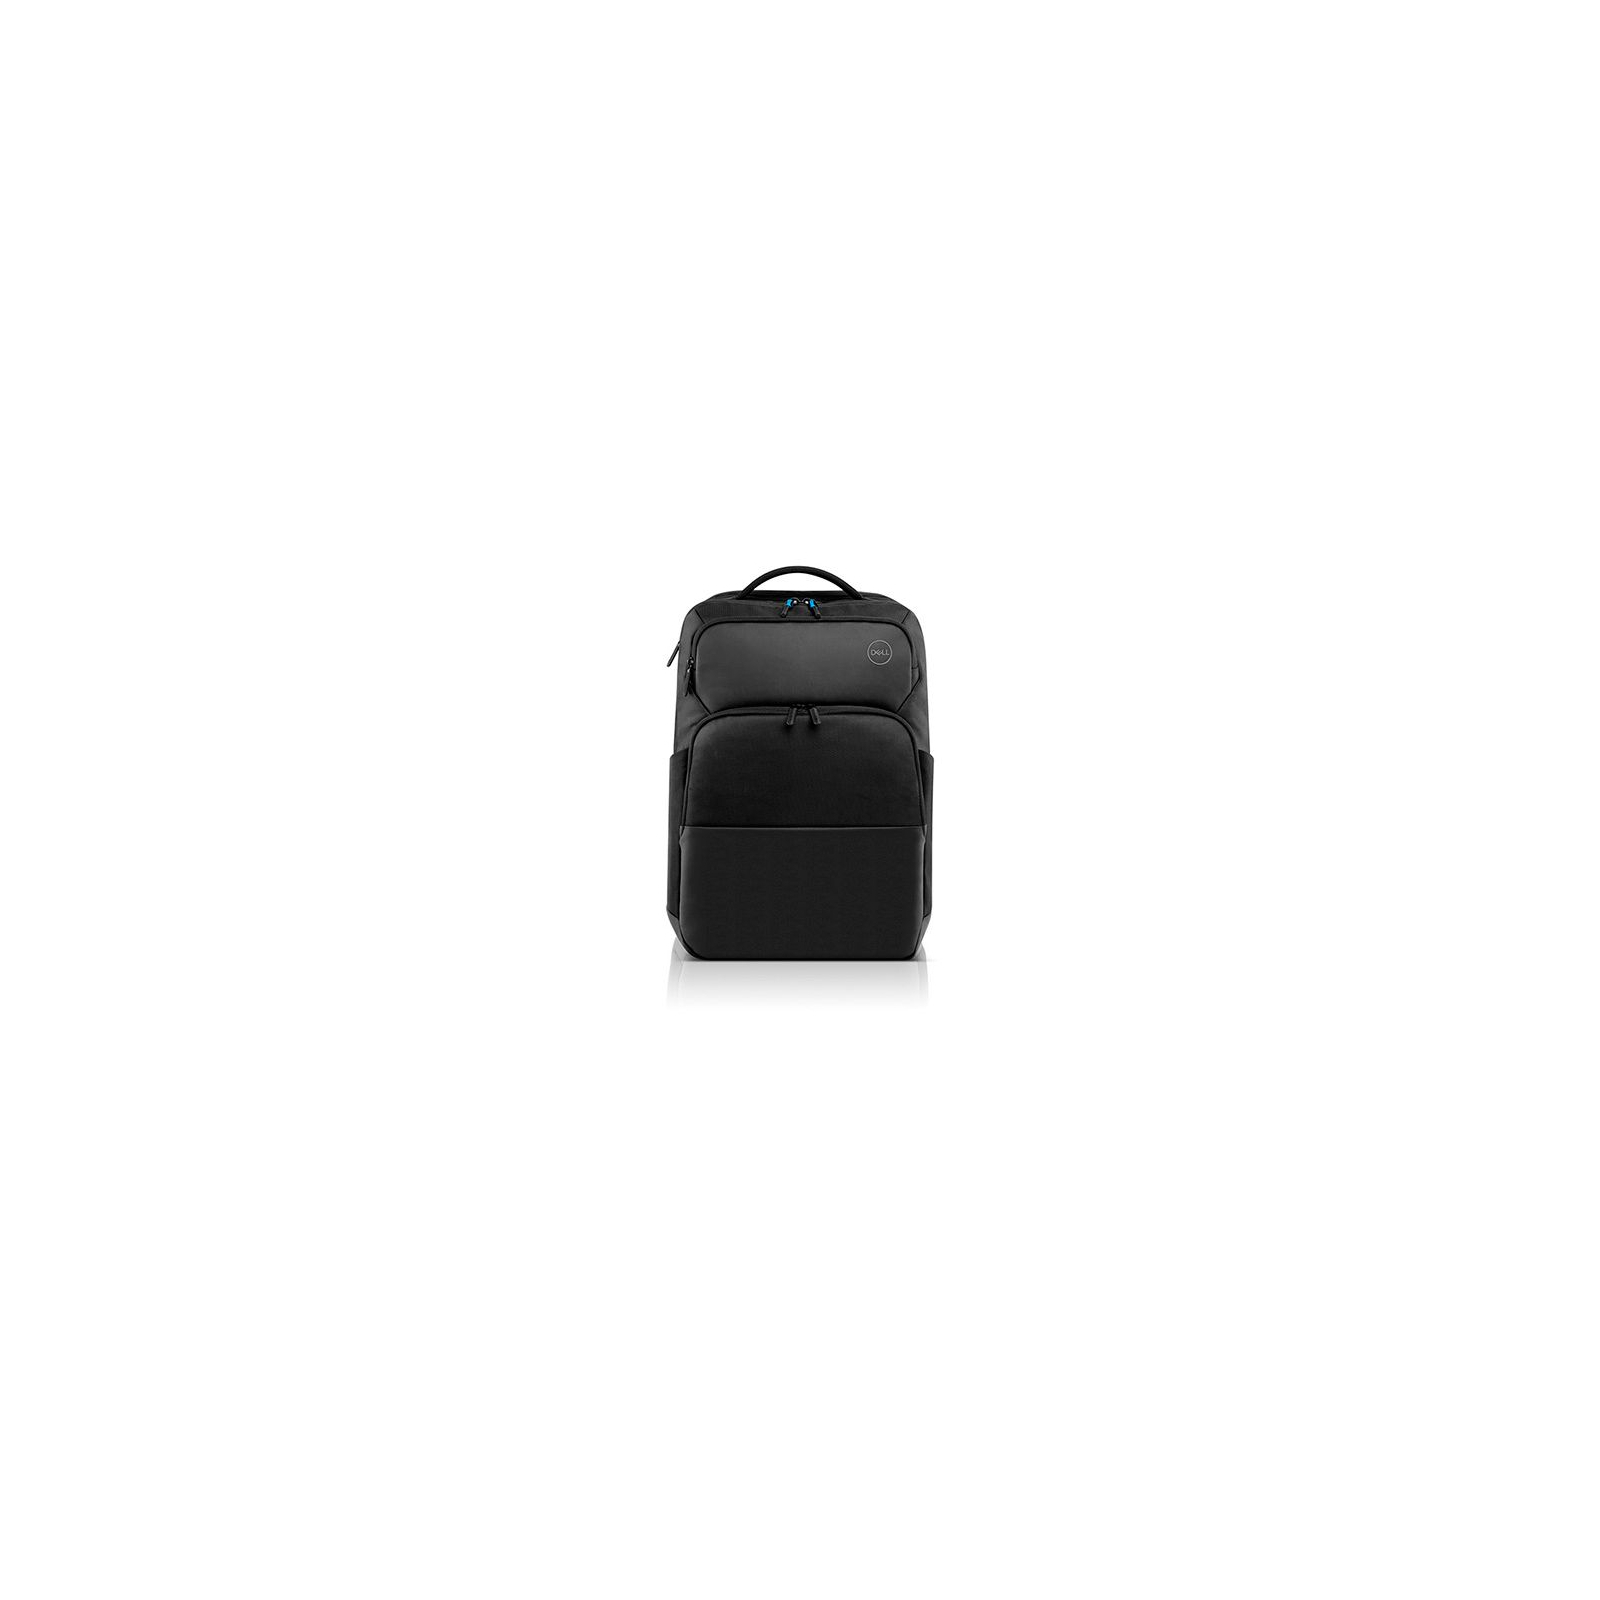 Рюкзак для ноутбука Dell 17.3" Pro Backpack PO1720P (460-BCMM/460-BCMM-08)